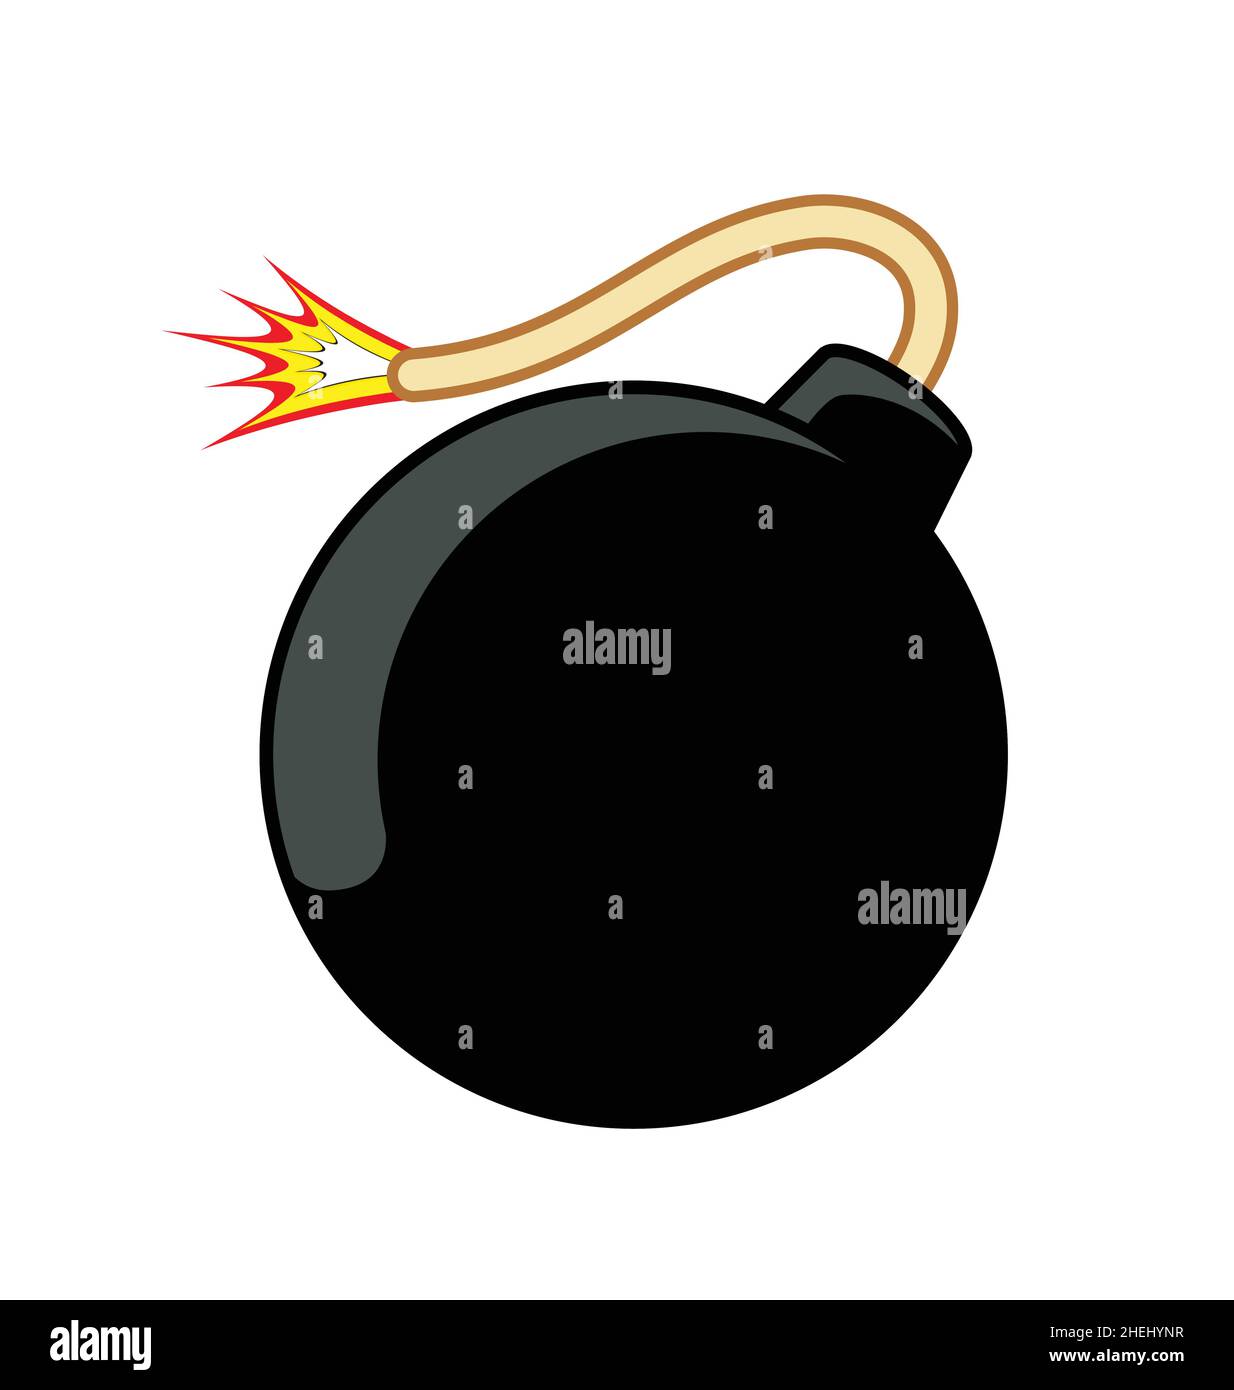 classico cartoon bomba nera bomba esplosiva dinamite con fuze illuminato simbolo vettore isolato su sfondo bianco Illustrazione Vettoriale